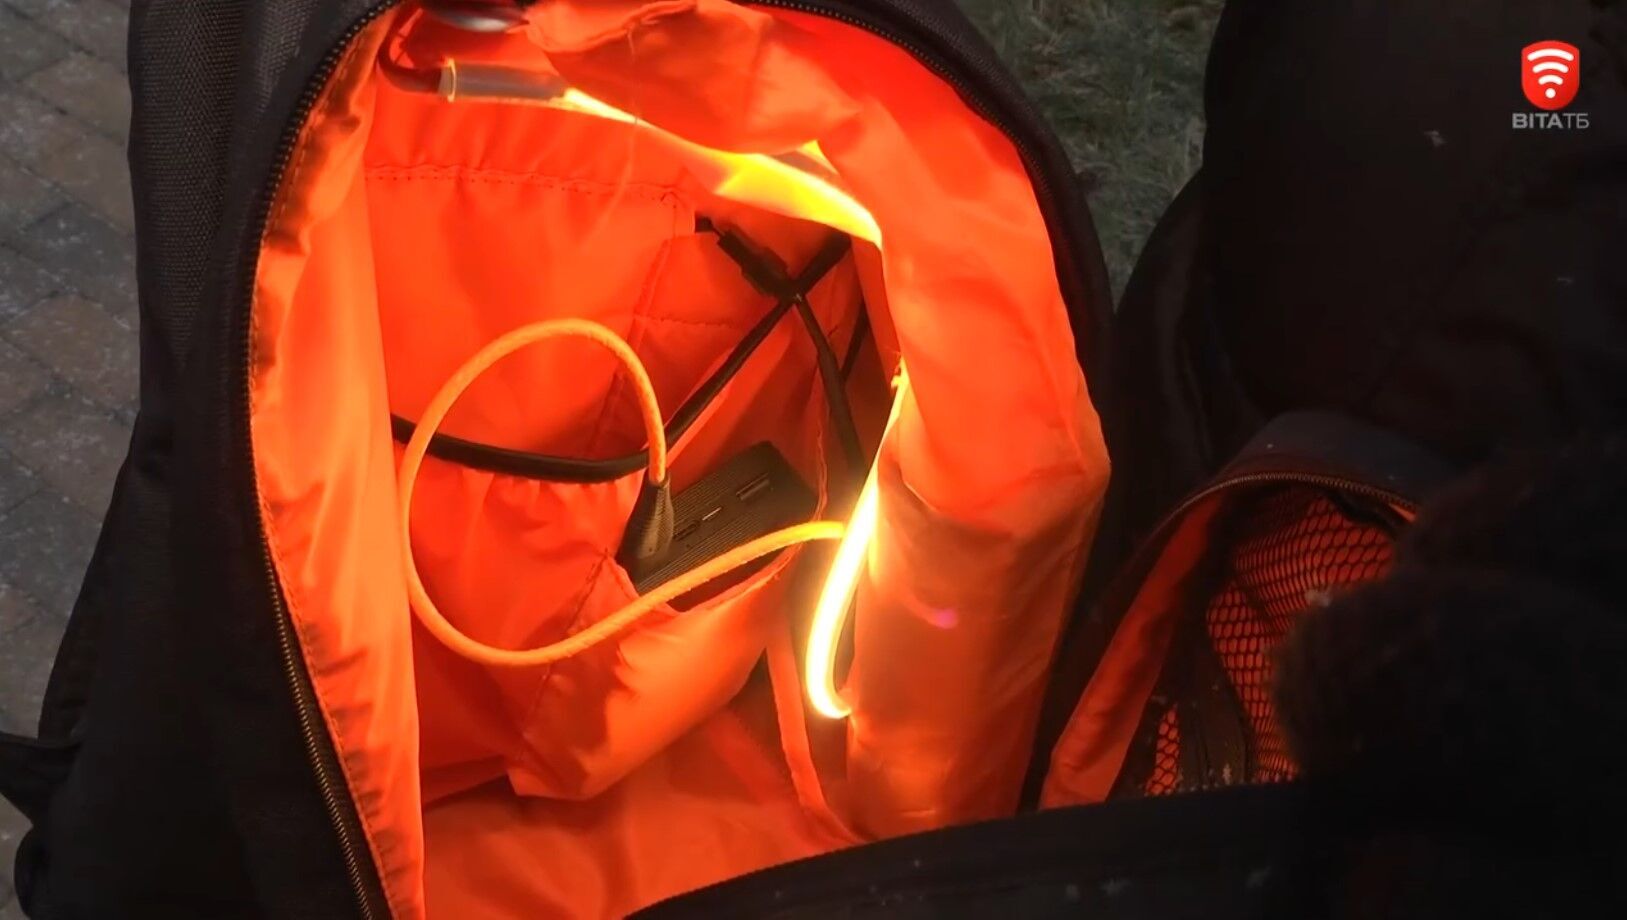 W Winnicy student opracował inteligentny plecak, który waży rzeczy i uruchamia alarm w przypadku kradzieży. Wideo